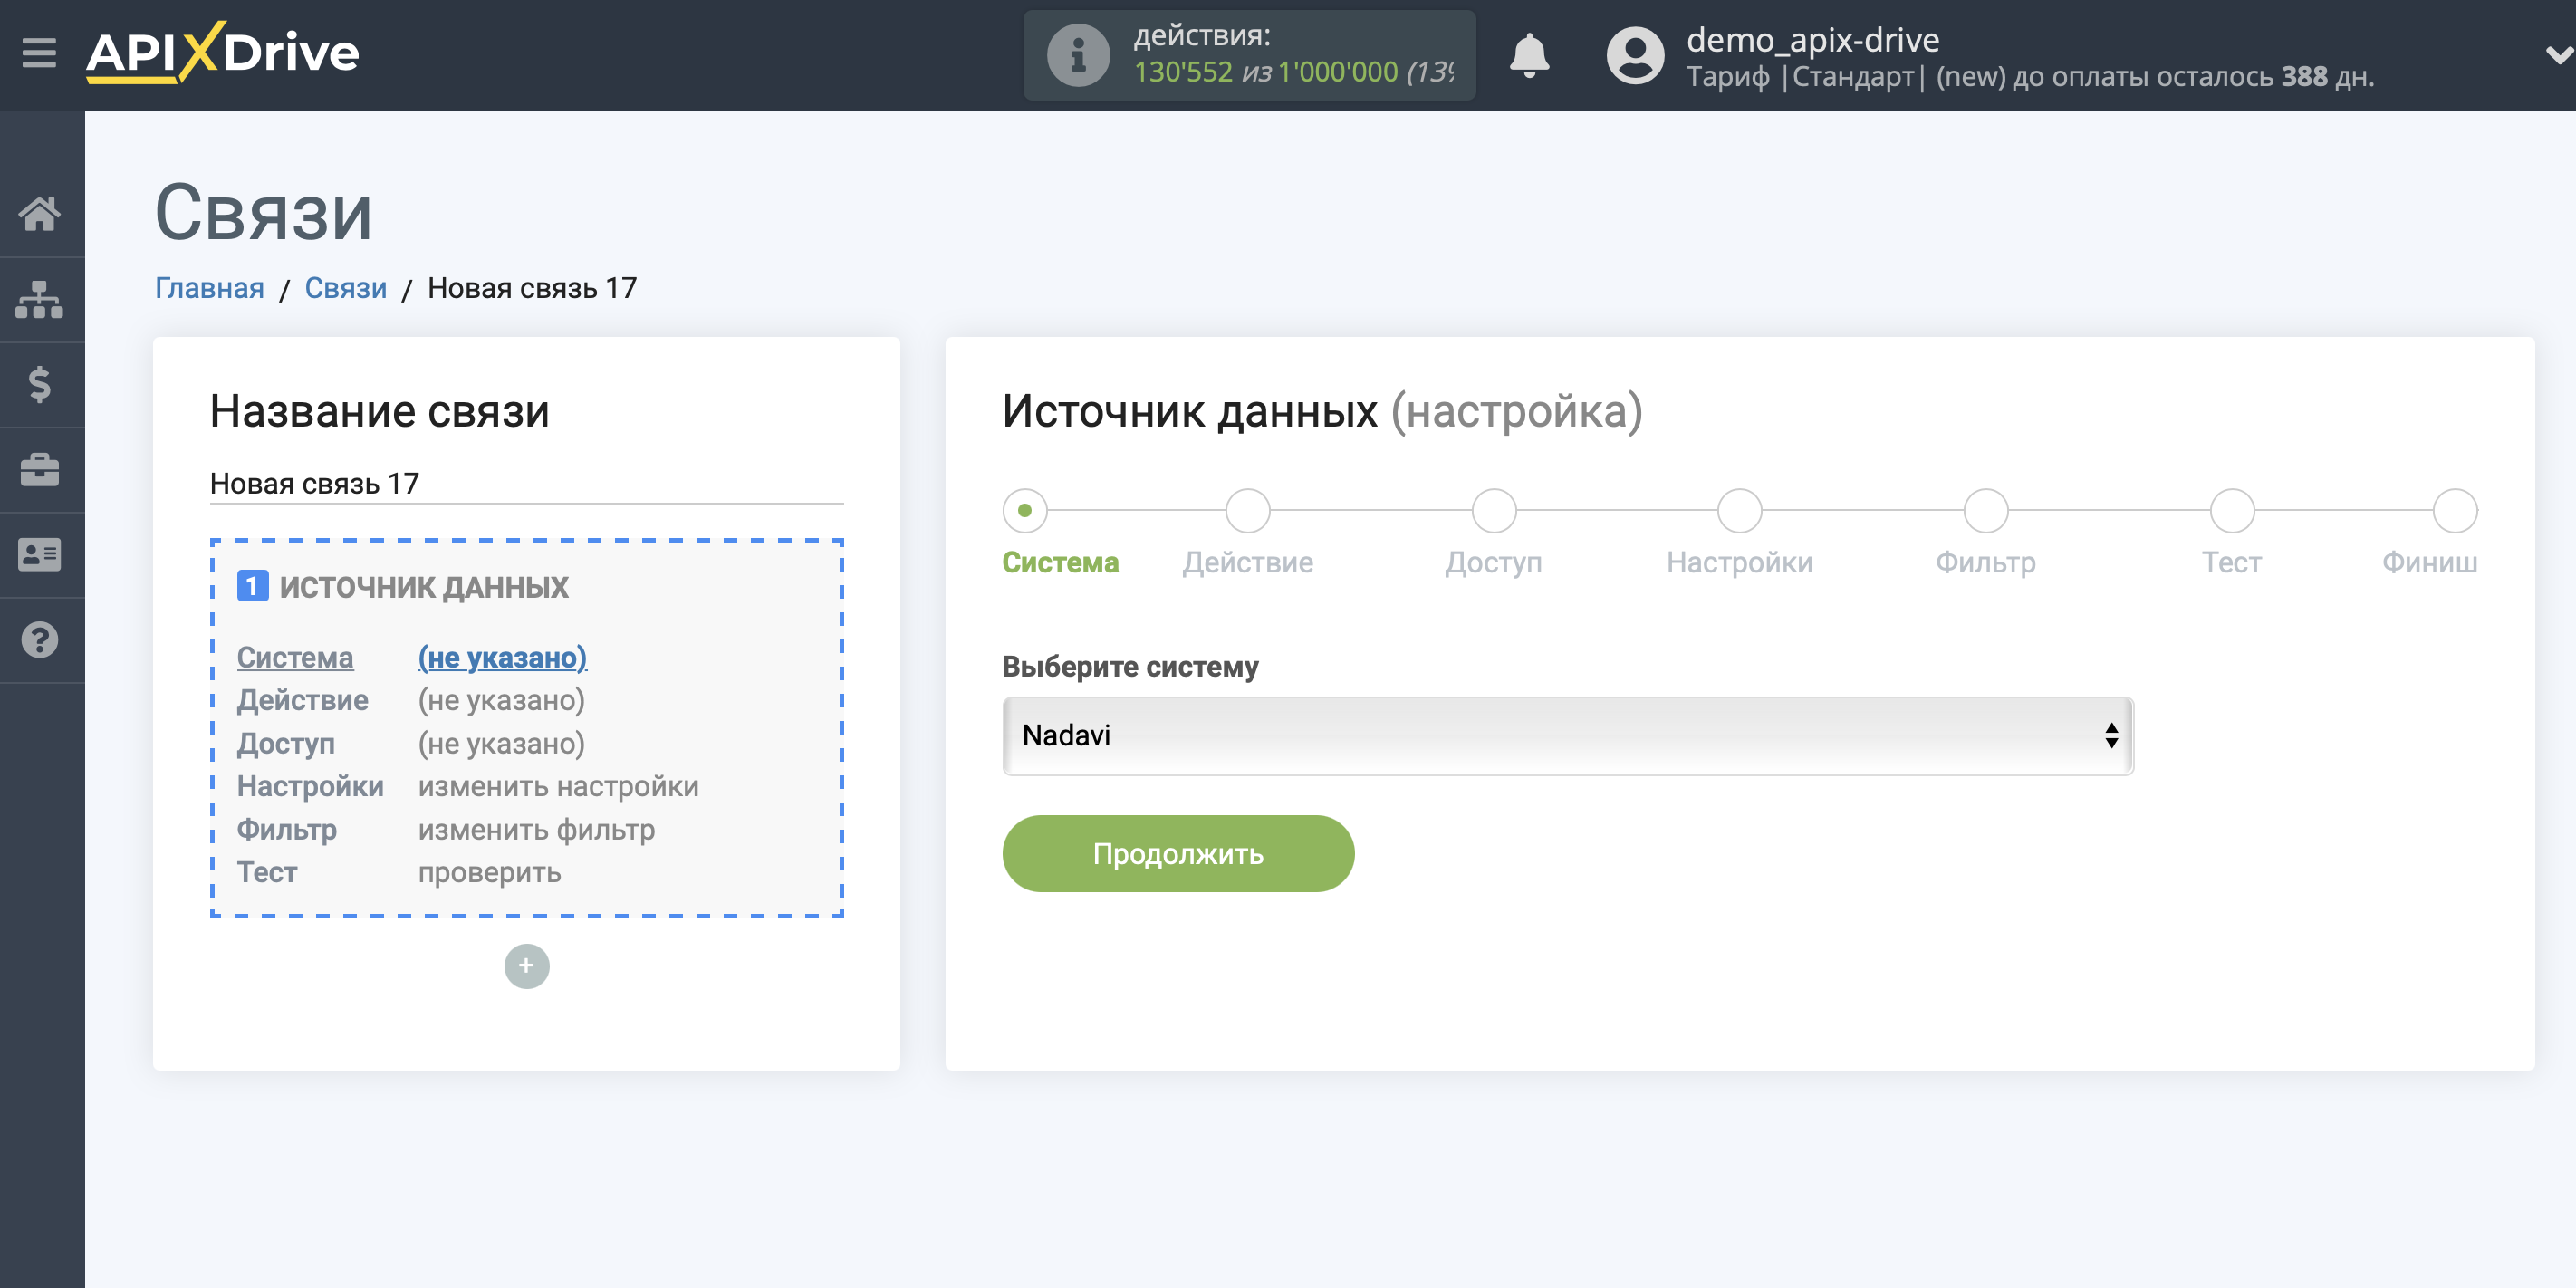 Импорт данных по расходам из Nadavi в Яндекс.Метрику | Выбор системы источника данных